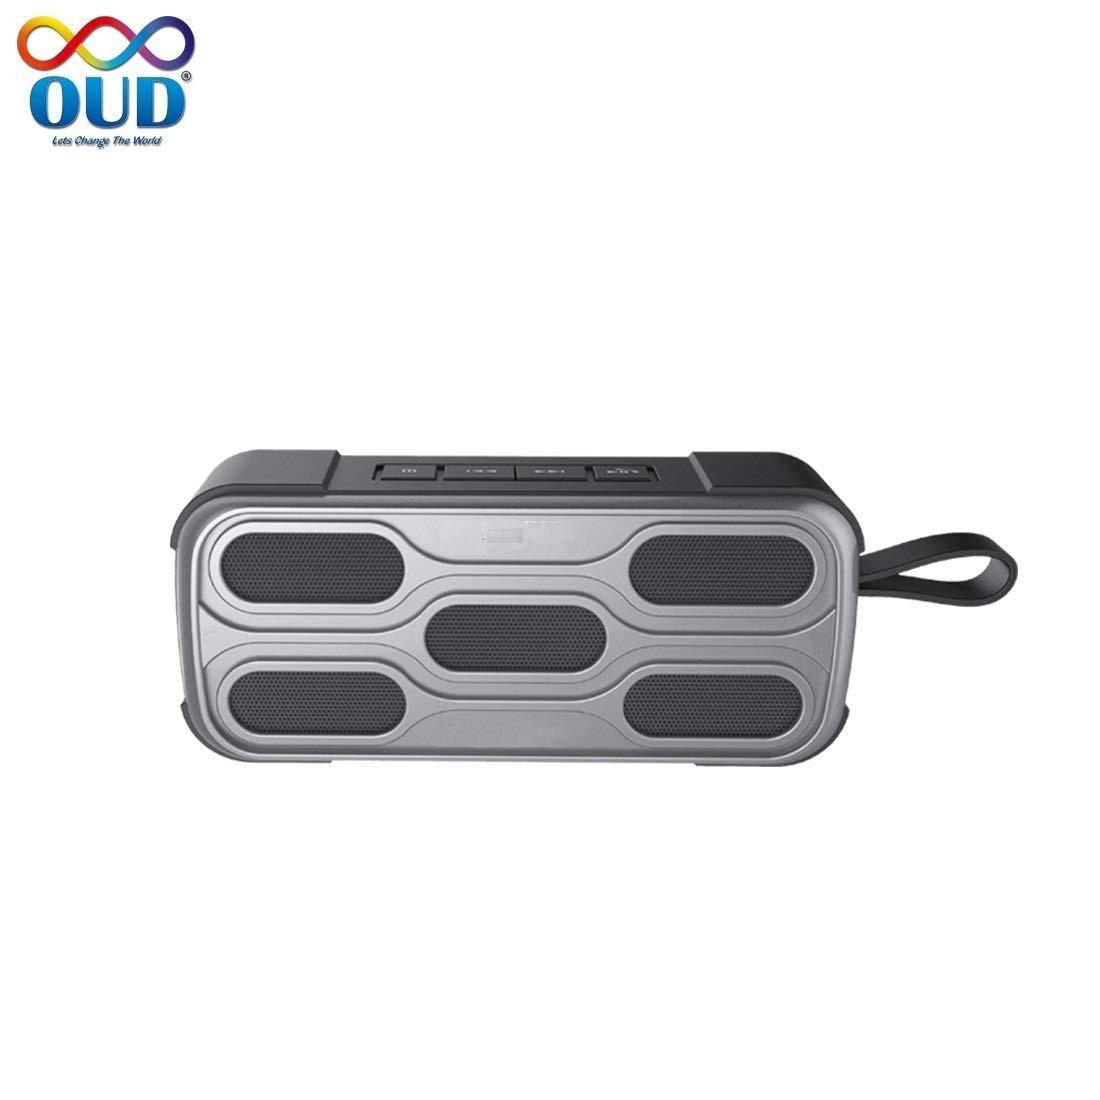 OUD OD-BT476FM 10 Watt Wireless Bluetooth Portable Speaker